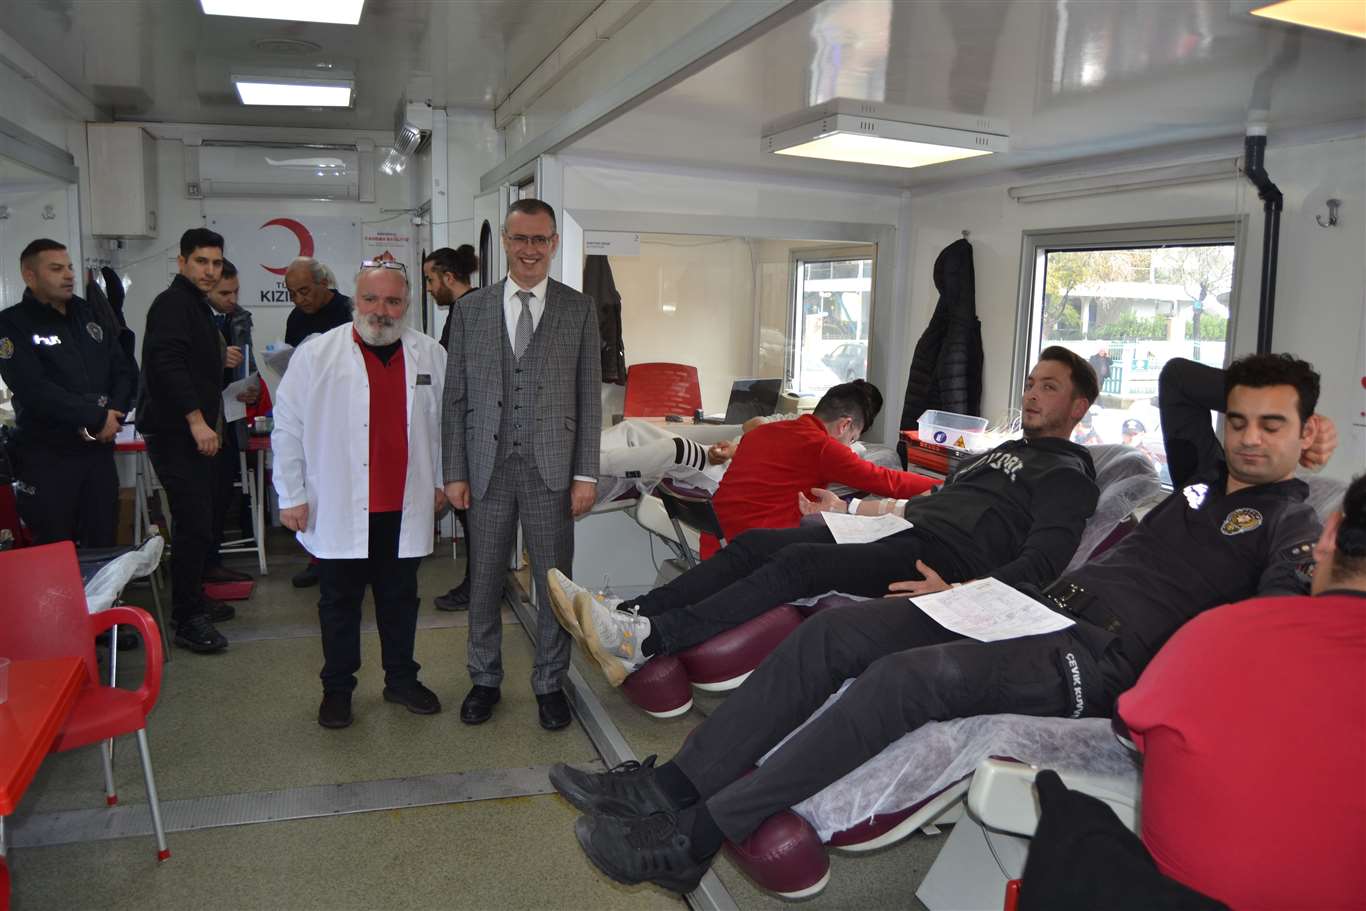       Fethiye'de kan bağışı kampanyası başlatıldı haberi